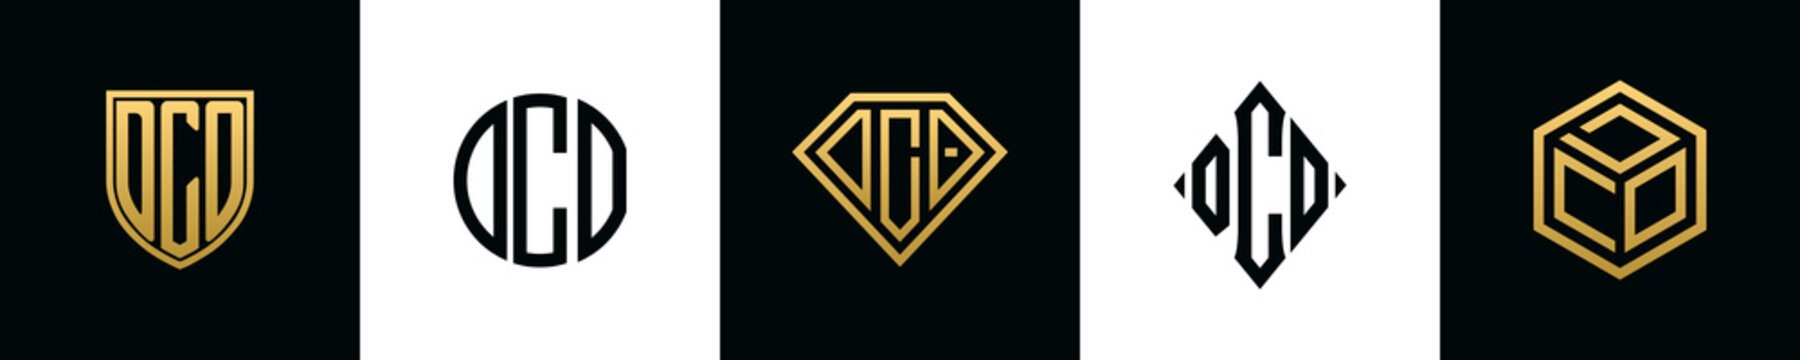 Initial letters DCO logo designs Bundle